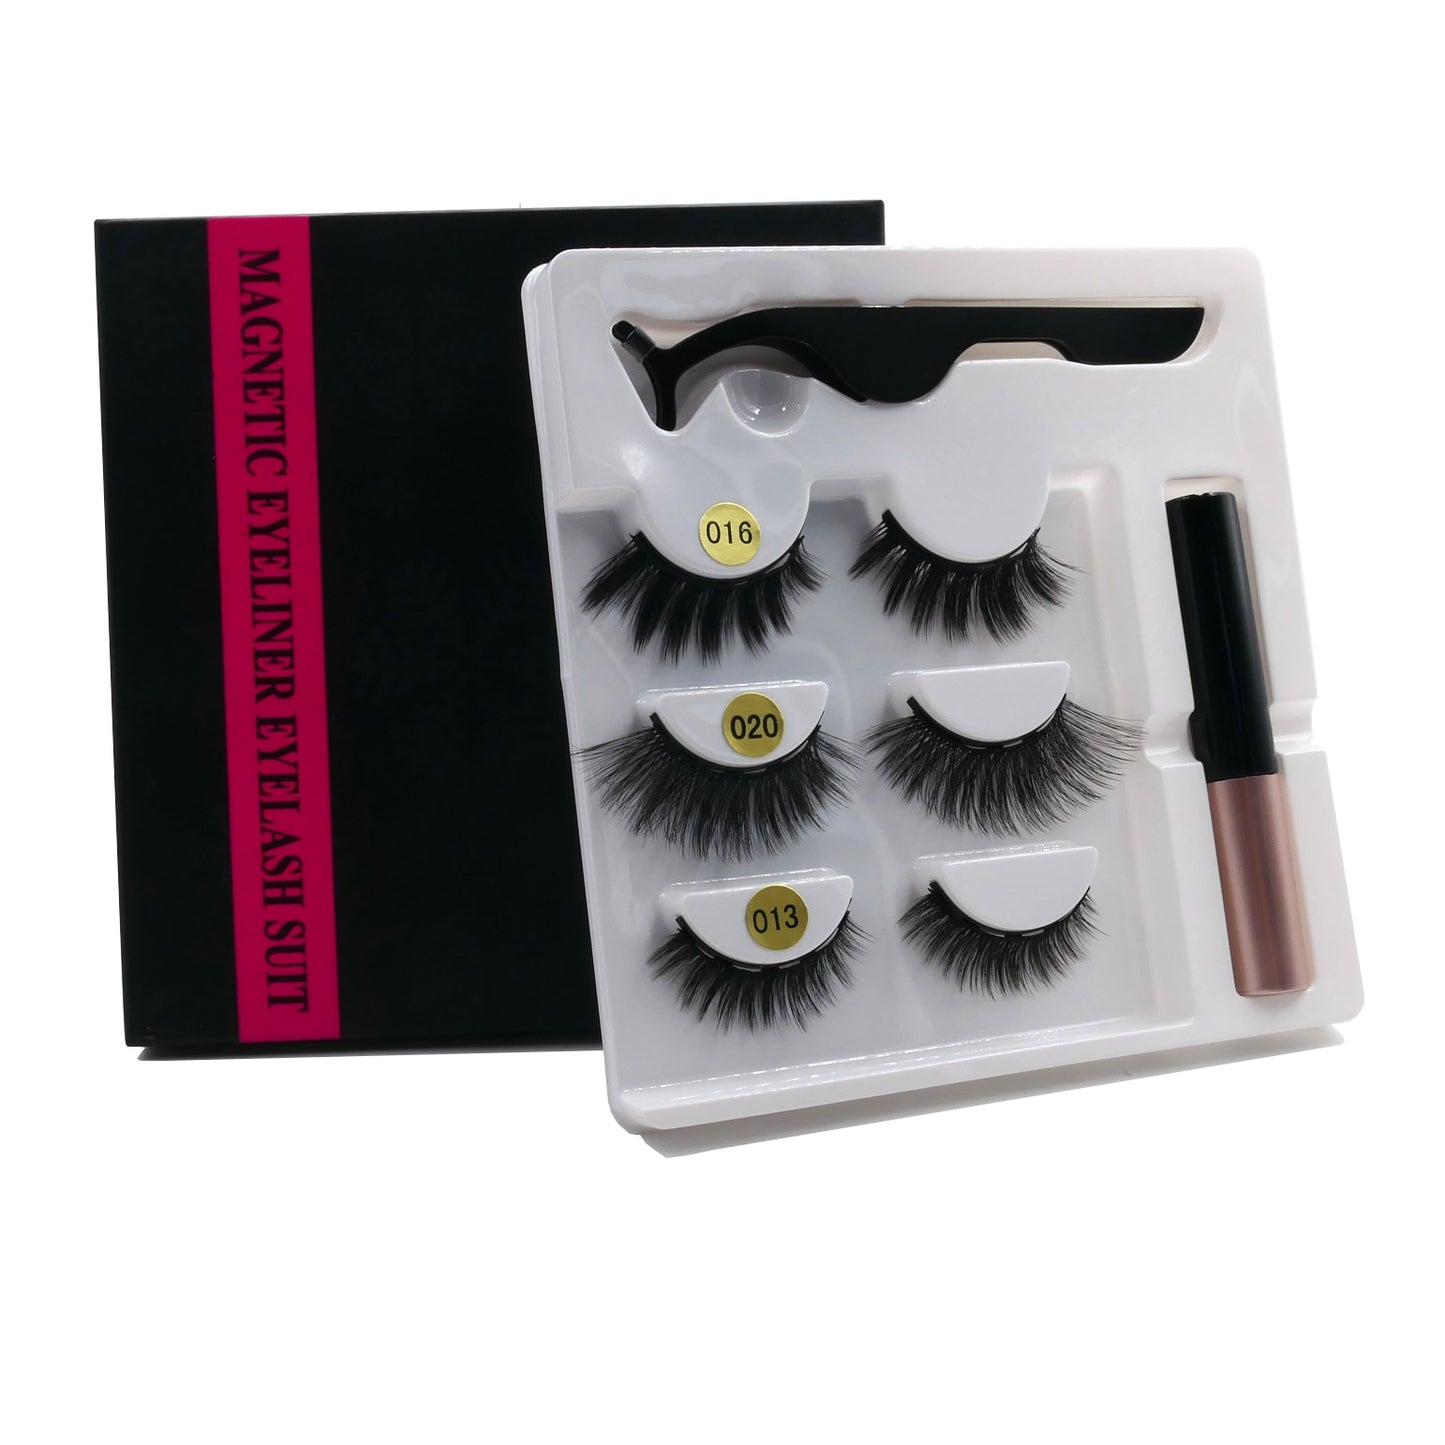 Magnetic Eyelashes 3D Mink Eyelashes Makeup Magnetic Lashes Eyeliner Tweezers Set Natural False Lashes Short Faux Cils